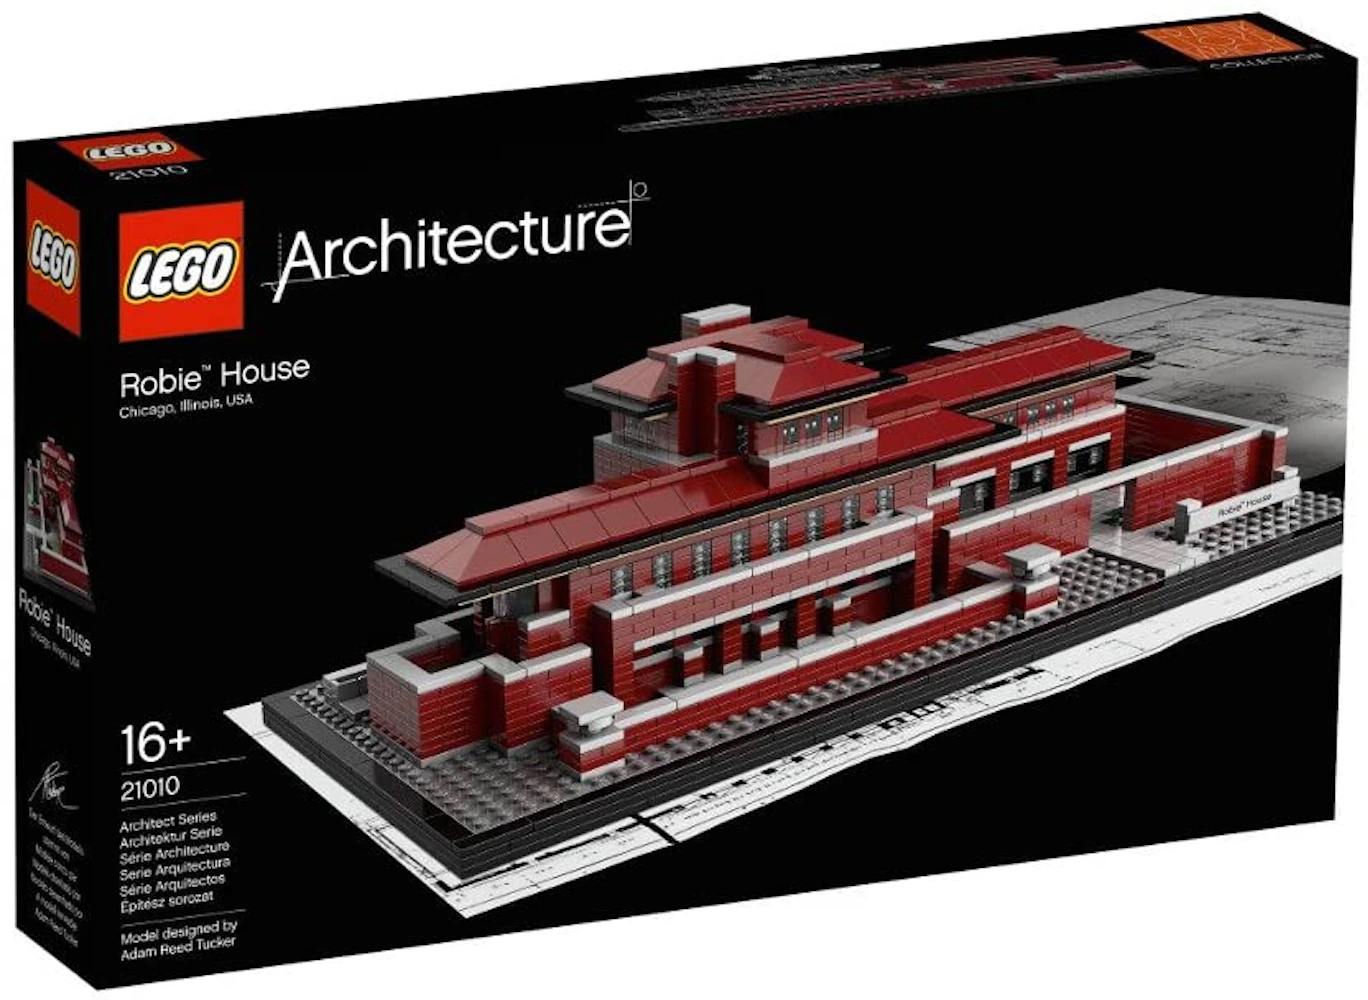 https://images.stockx.com/images/LEGO-Architecture-Robie-House-Set-21010.jpg?fit=fill&bg=FFFFFF&w=700&h=500&fm=webp&auto=compress&q=90&dpr=2&trim=color&updated_at=1616698292